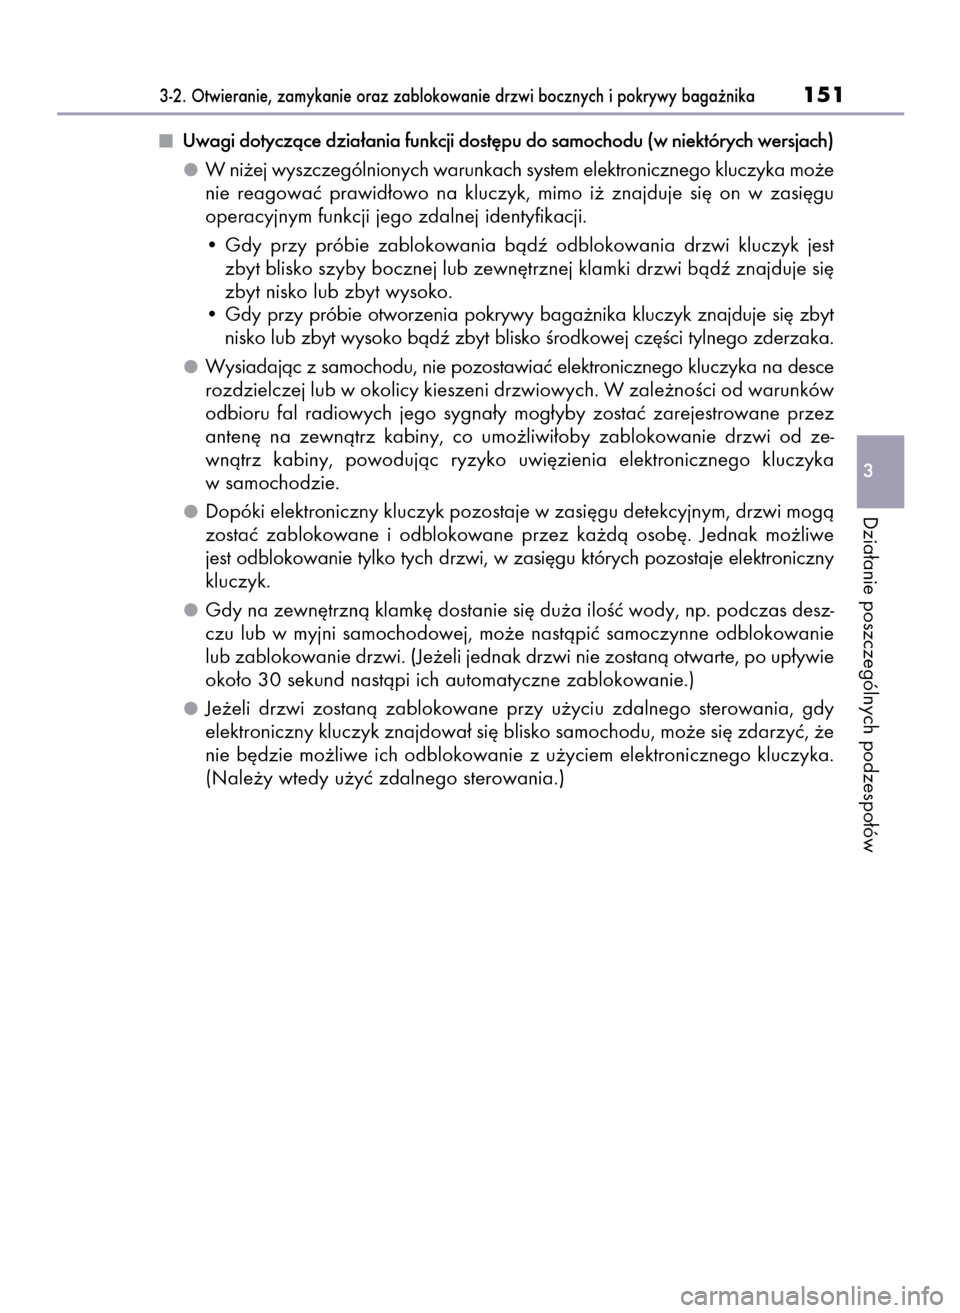 Lexus GS450h 2015  Instrukcja Obsługi (in Polish) Uwagi dotyczàce dzia∏ania funkcji dost´pu do samochodu (w niektórych wersjach)
W ni˝ej wyszczególnionych warunkach system elektronicznego kluczyka mo˝e
nie  reagowaç  prawid∏owo  na  kluczy